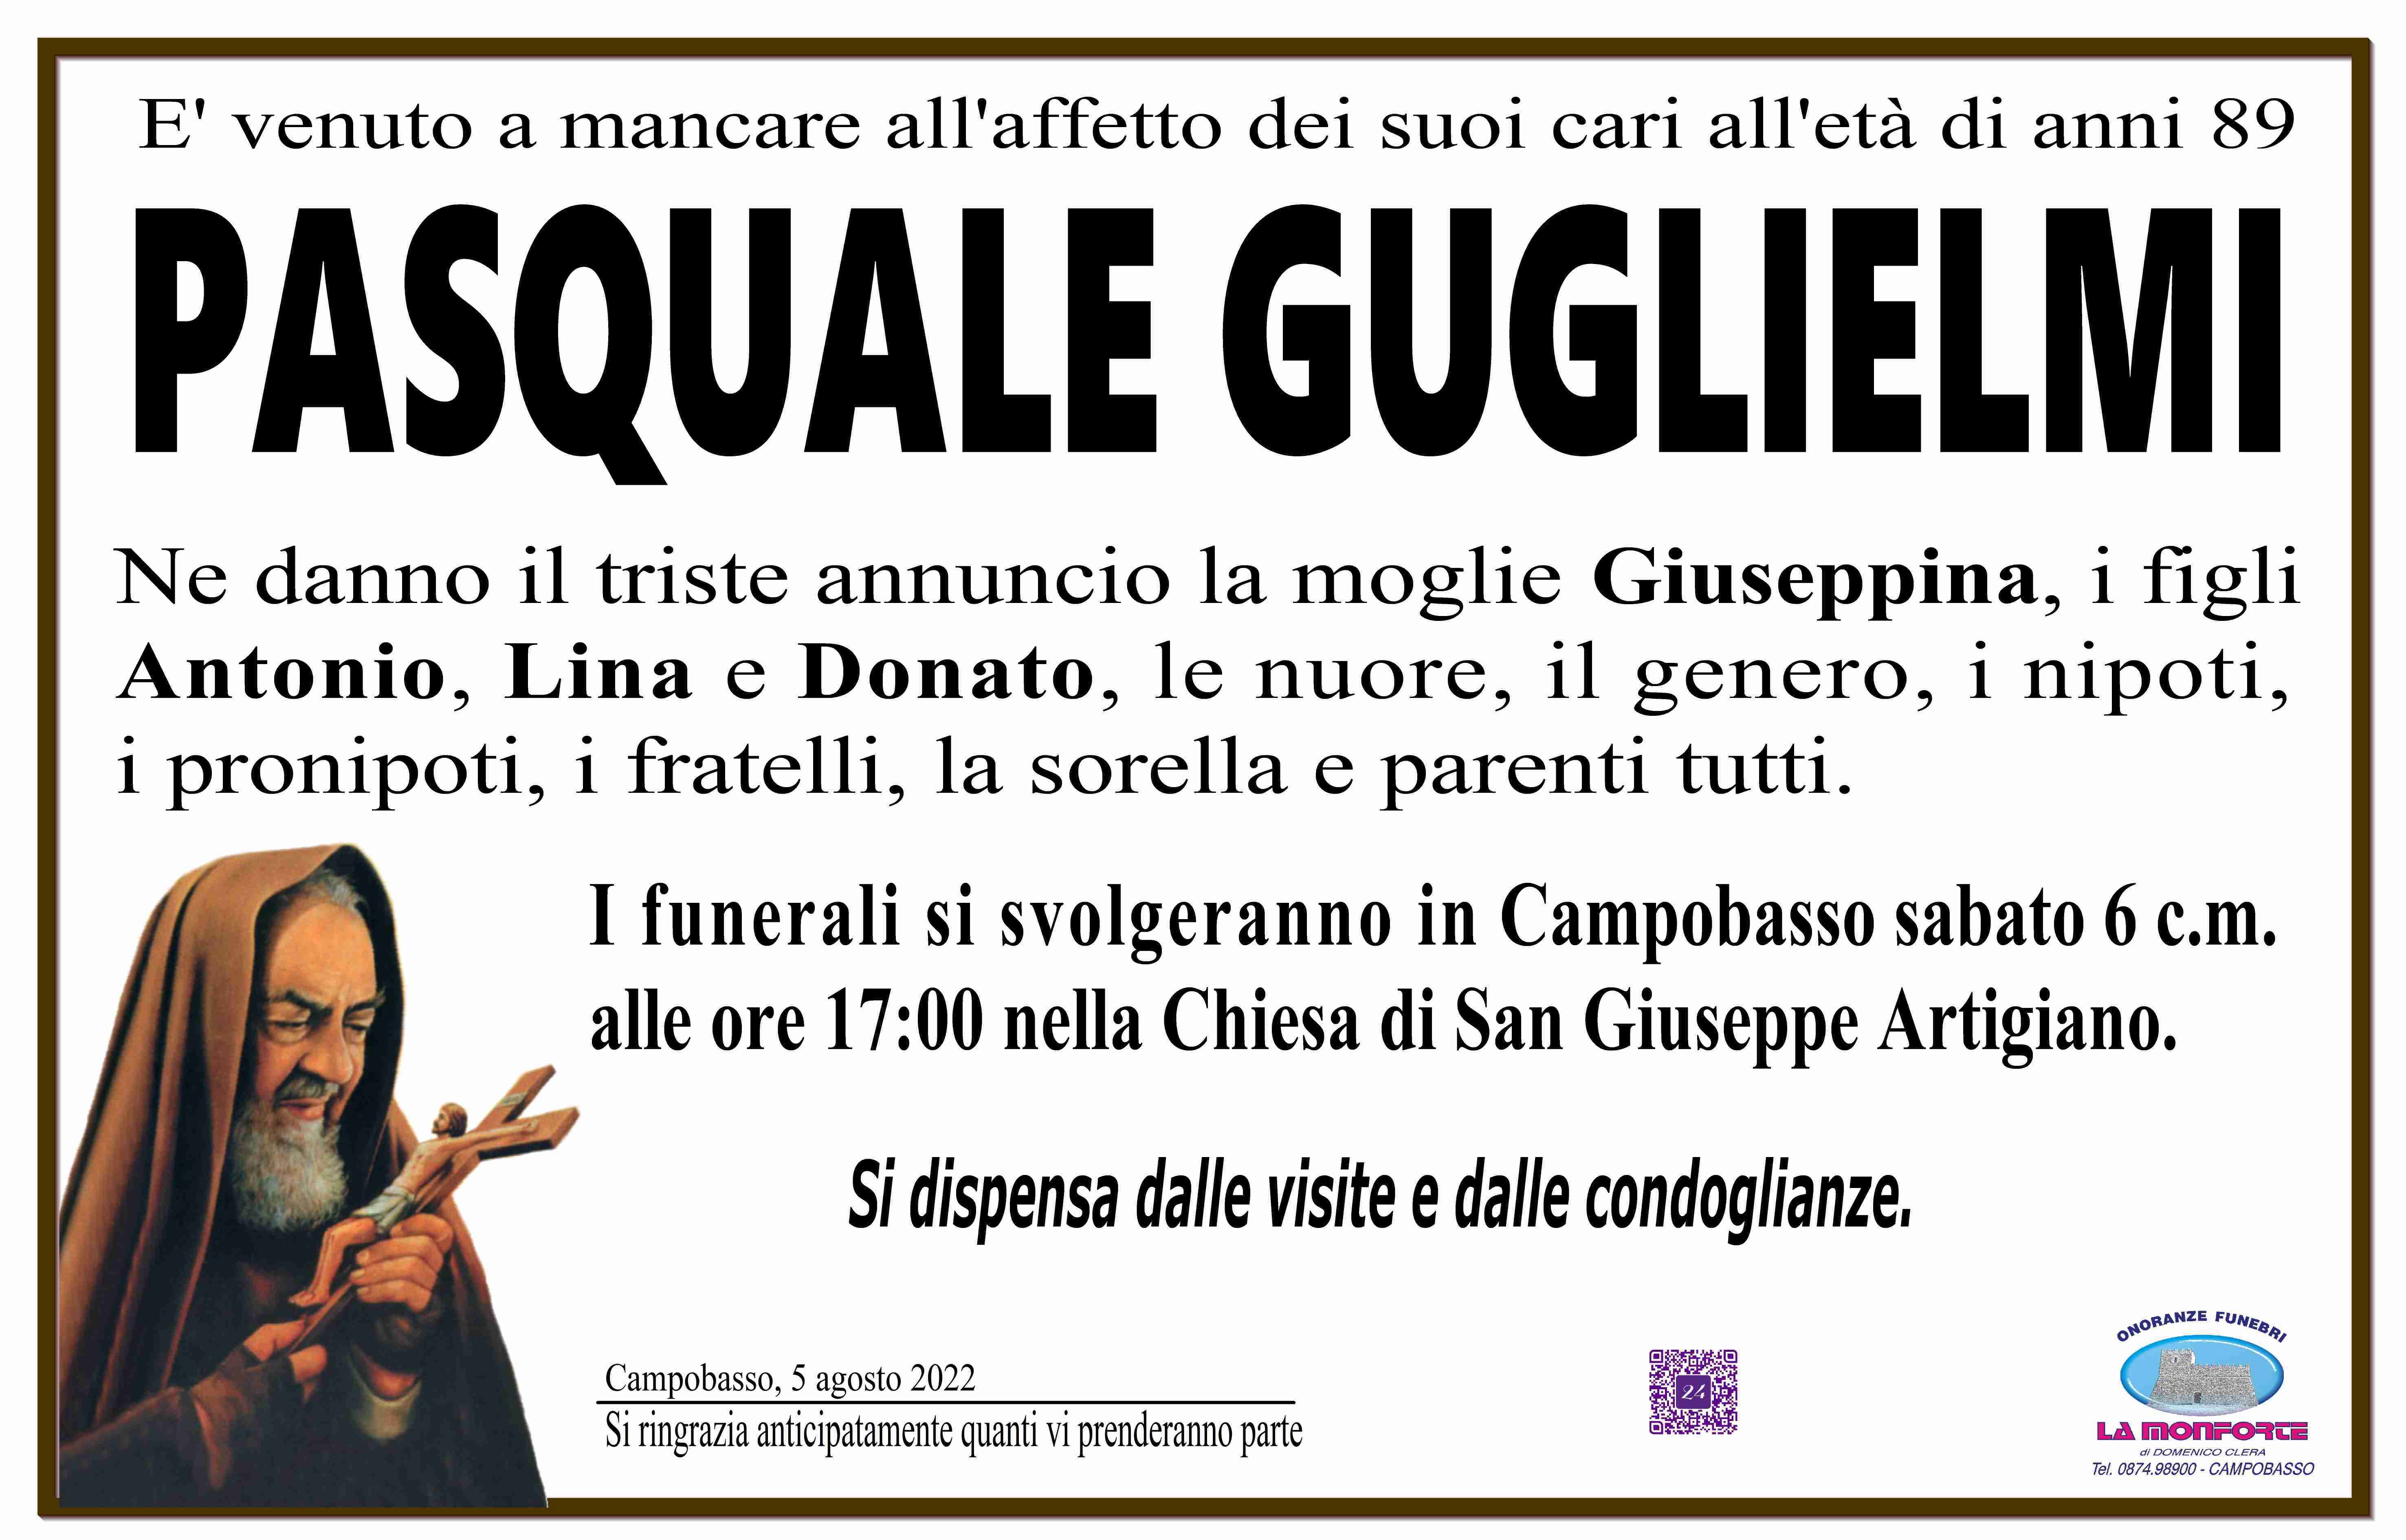 Pasquale Guglielmi